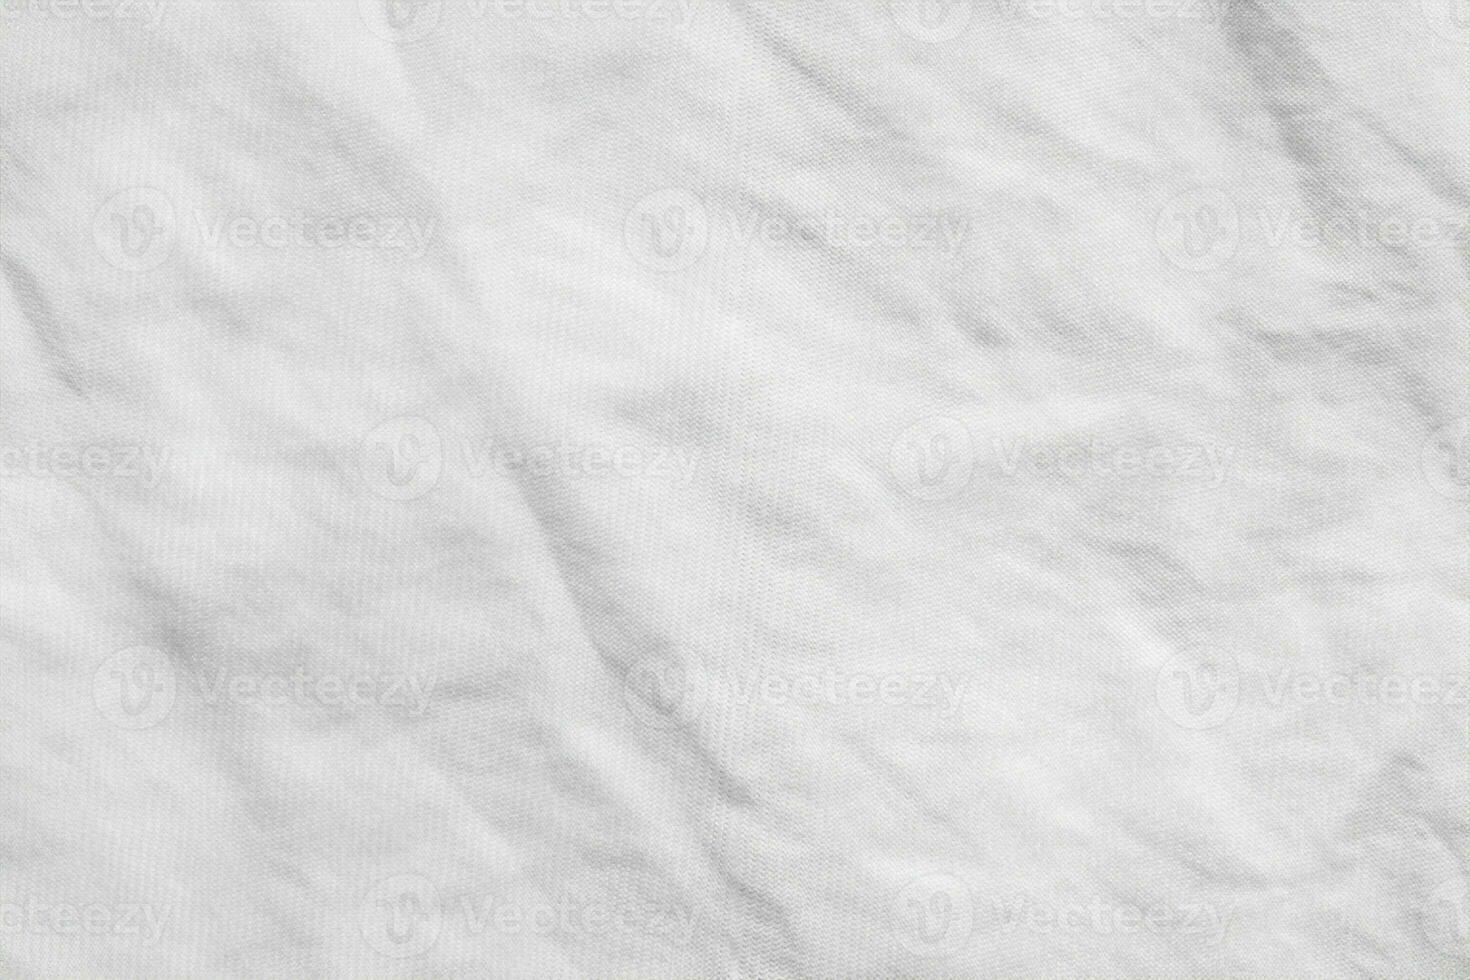 fond de texture de tissu de chemise en coton froissé blanc photo